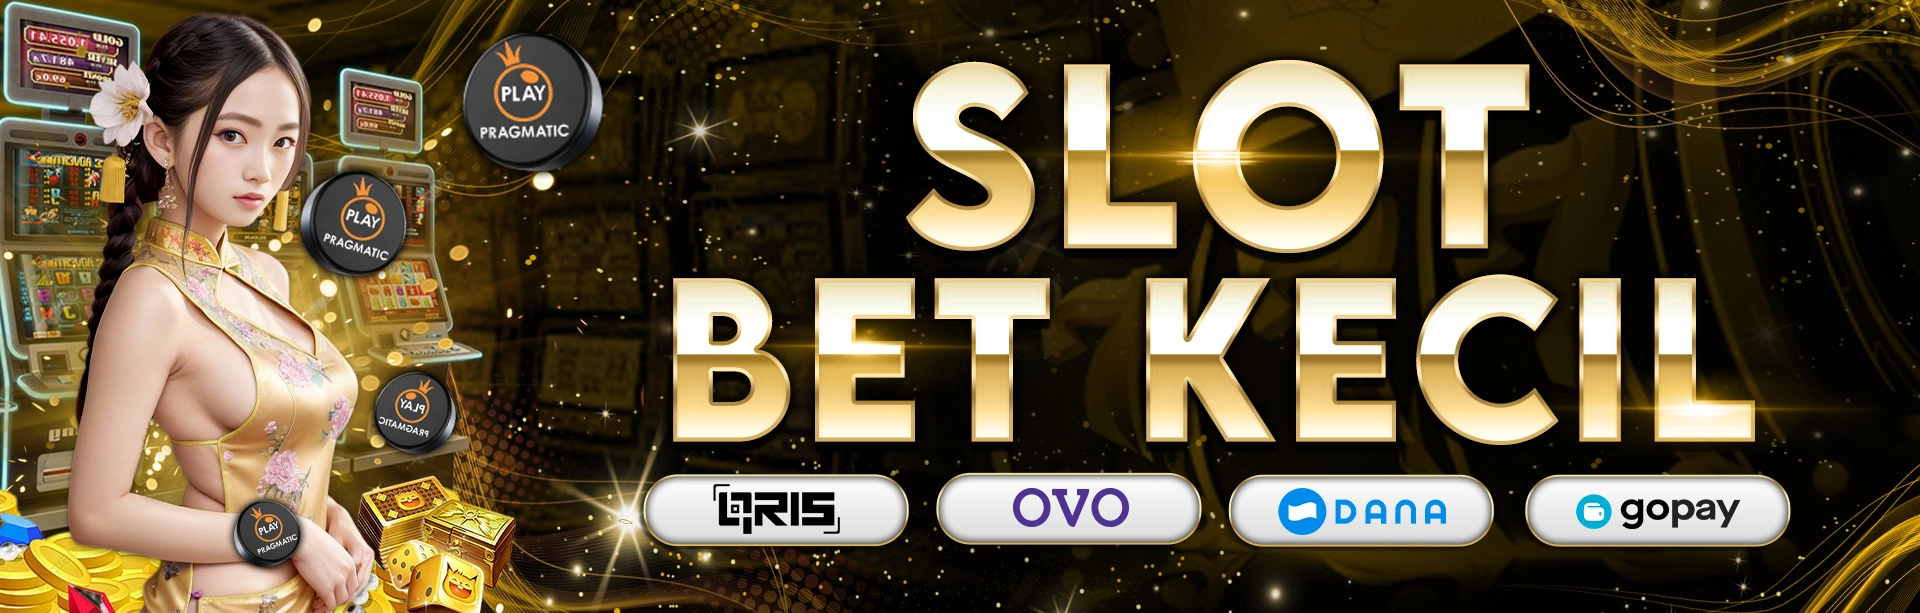 Nikmati Proses Permainannya Ingat-ingatlah bila arah utama bermain Slot Bet 100